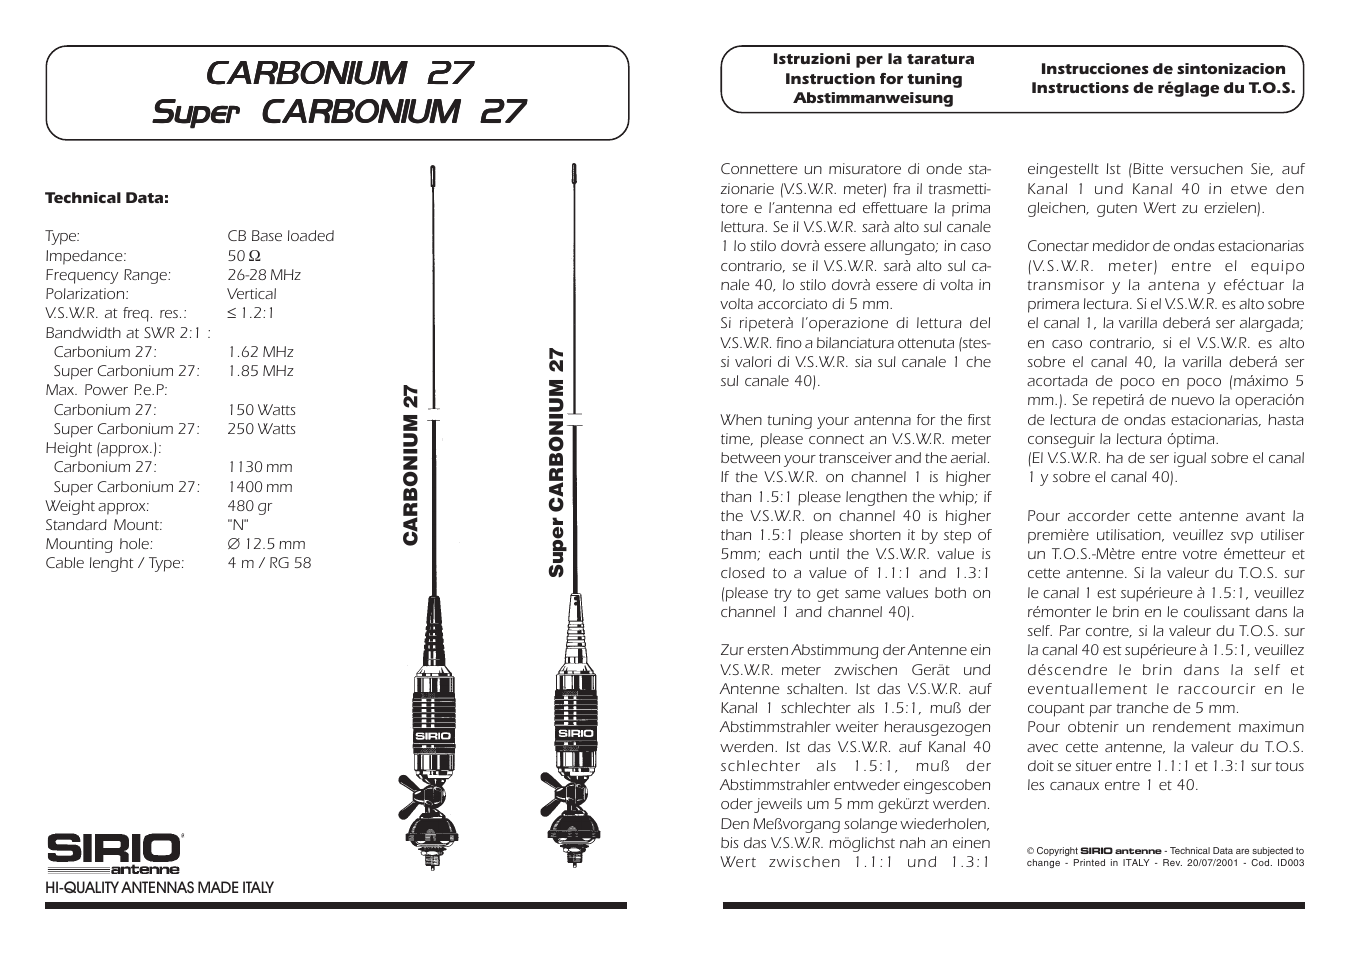 Carbonium 27